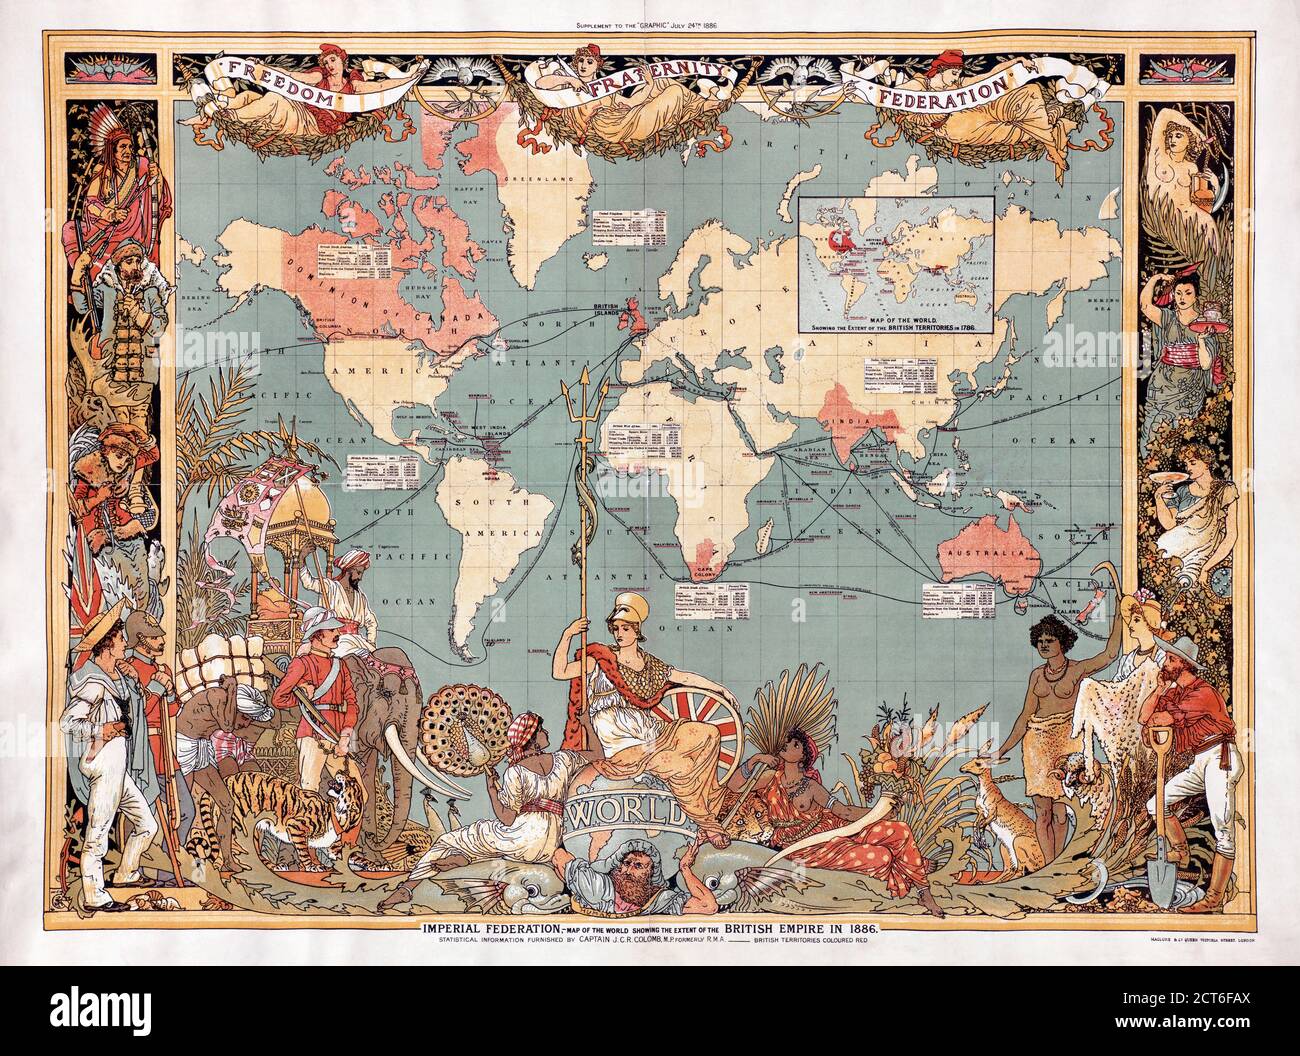 Karte der Welt, die das Ausmaß des Britischen Imperiums im Jahr 1886 zeigt. Die Territorien des Imperiums sind rot markiert. Die Karte wurde als Ergänzung in der Ausgabe vom 24. Juli 1886 der britischen Illustrierten Wochenzeitung The Graphic aufgenommen. Stockfoto